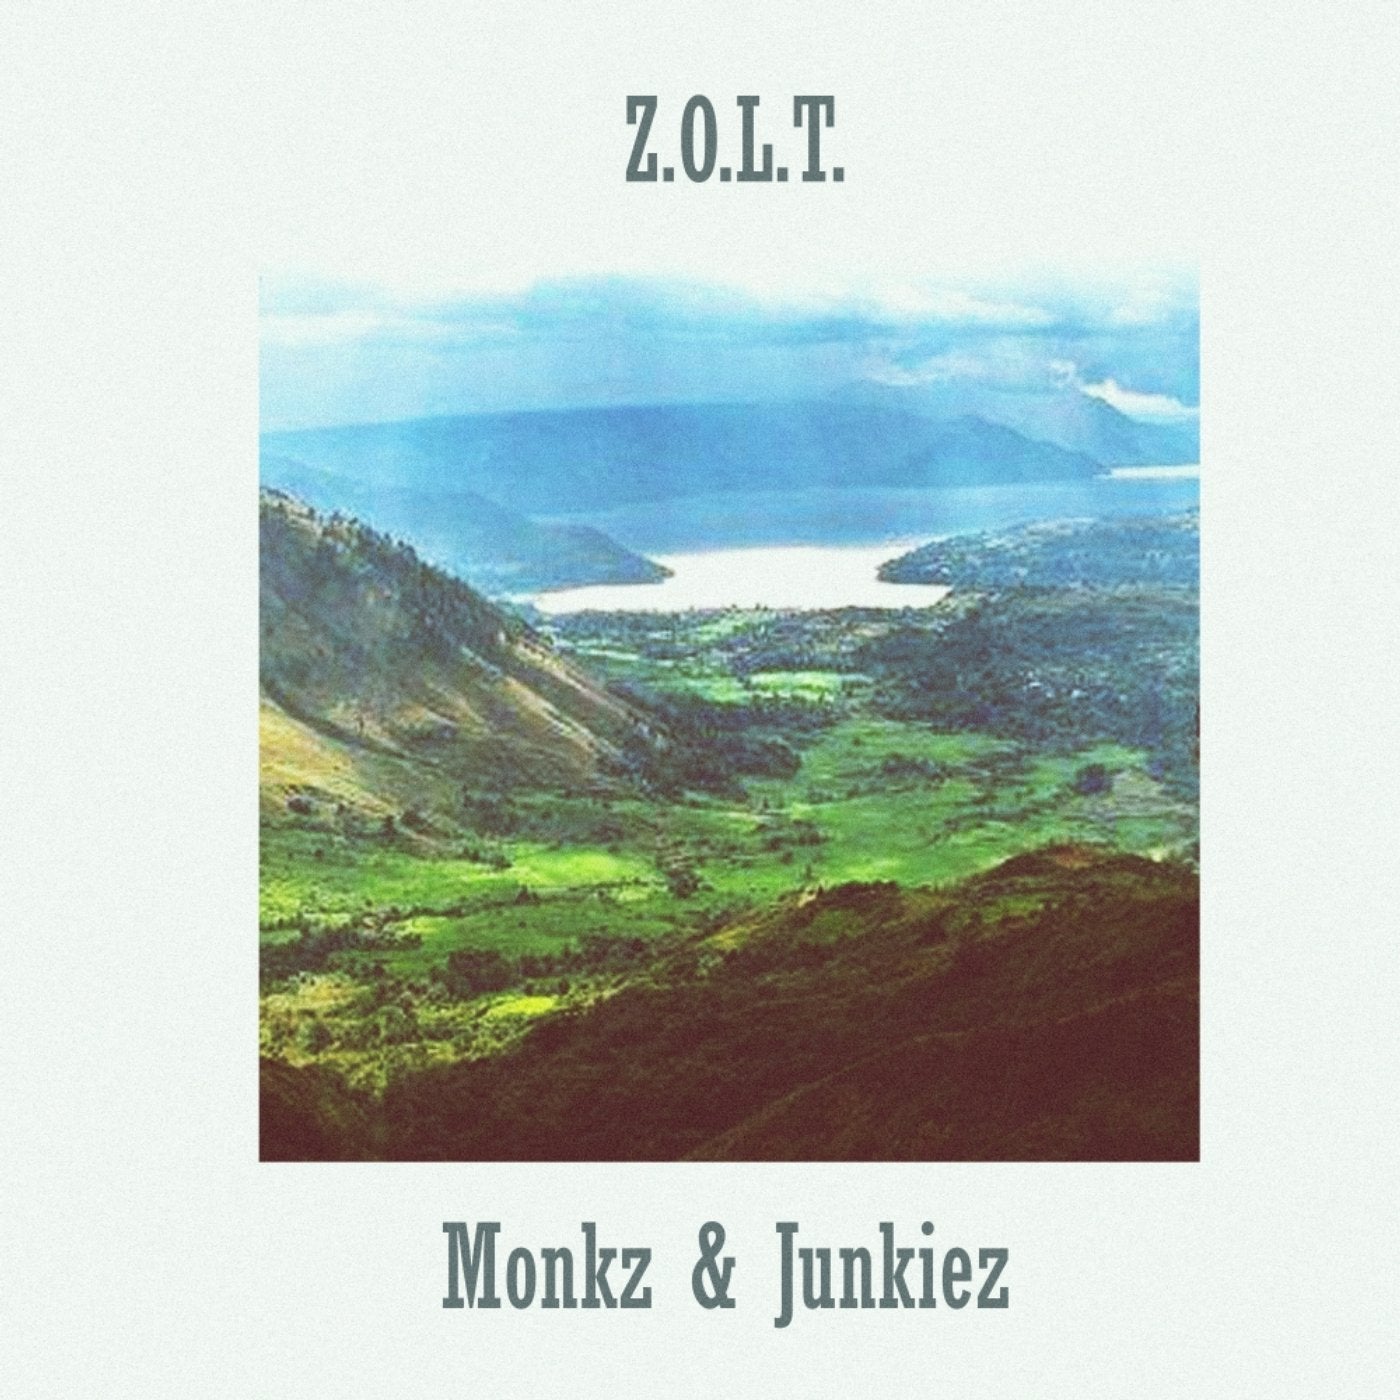 Monkz & Junkiez